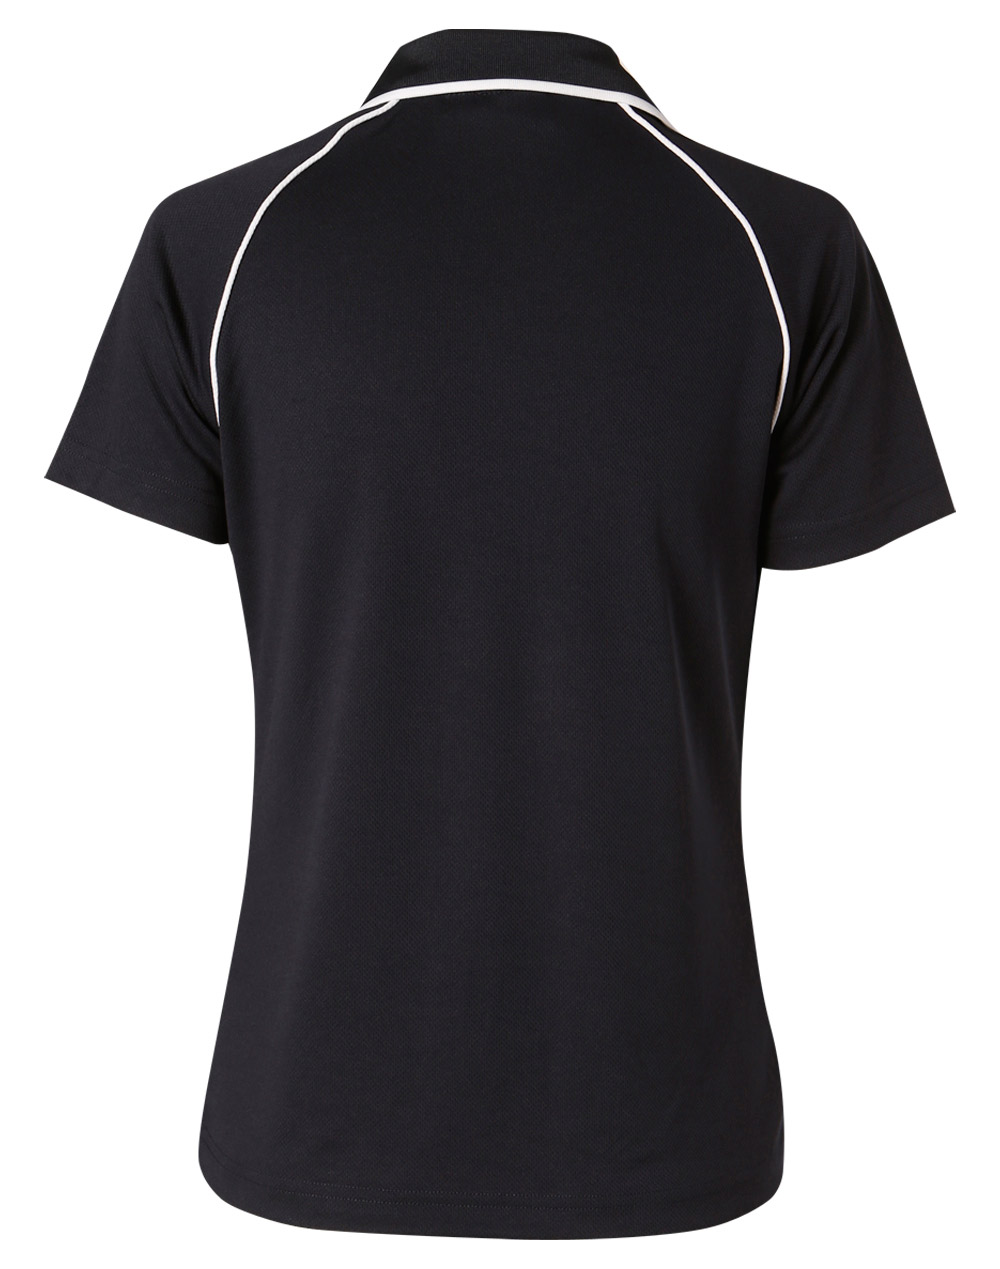 Custom Men's (Navy, White) Champion Raglan Polo Shirts Online Perth Australia